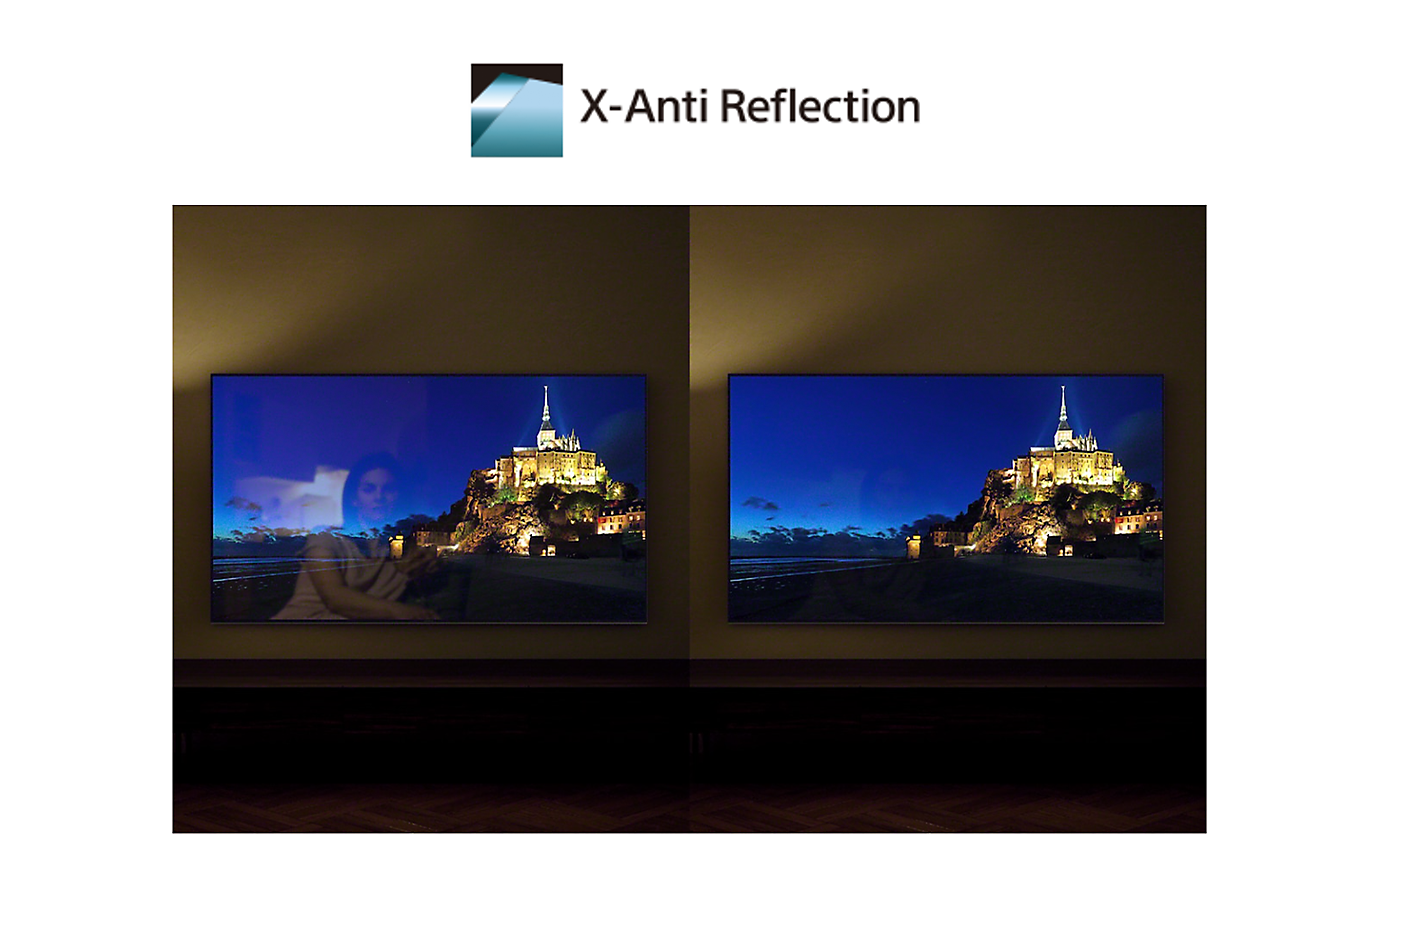 Primerjava zaslonov s tehnologijo X-Anti Reflection in brez nje